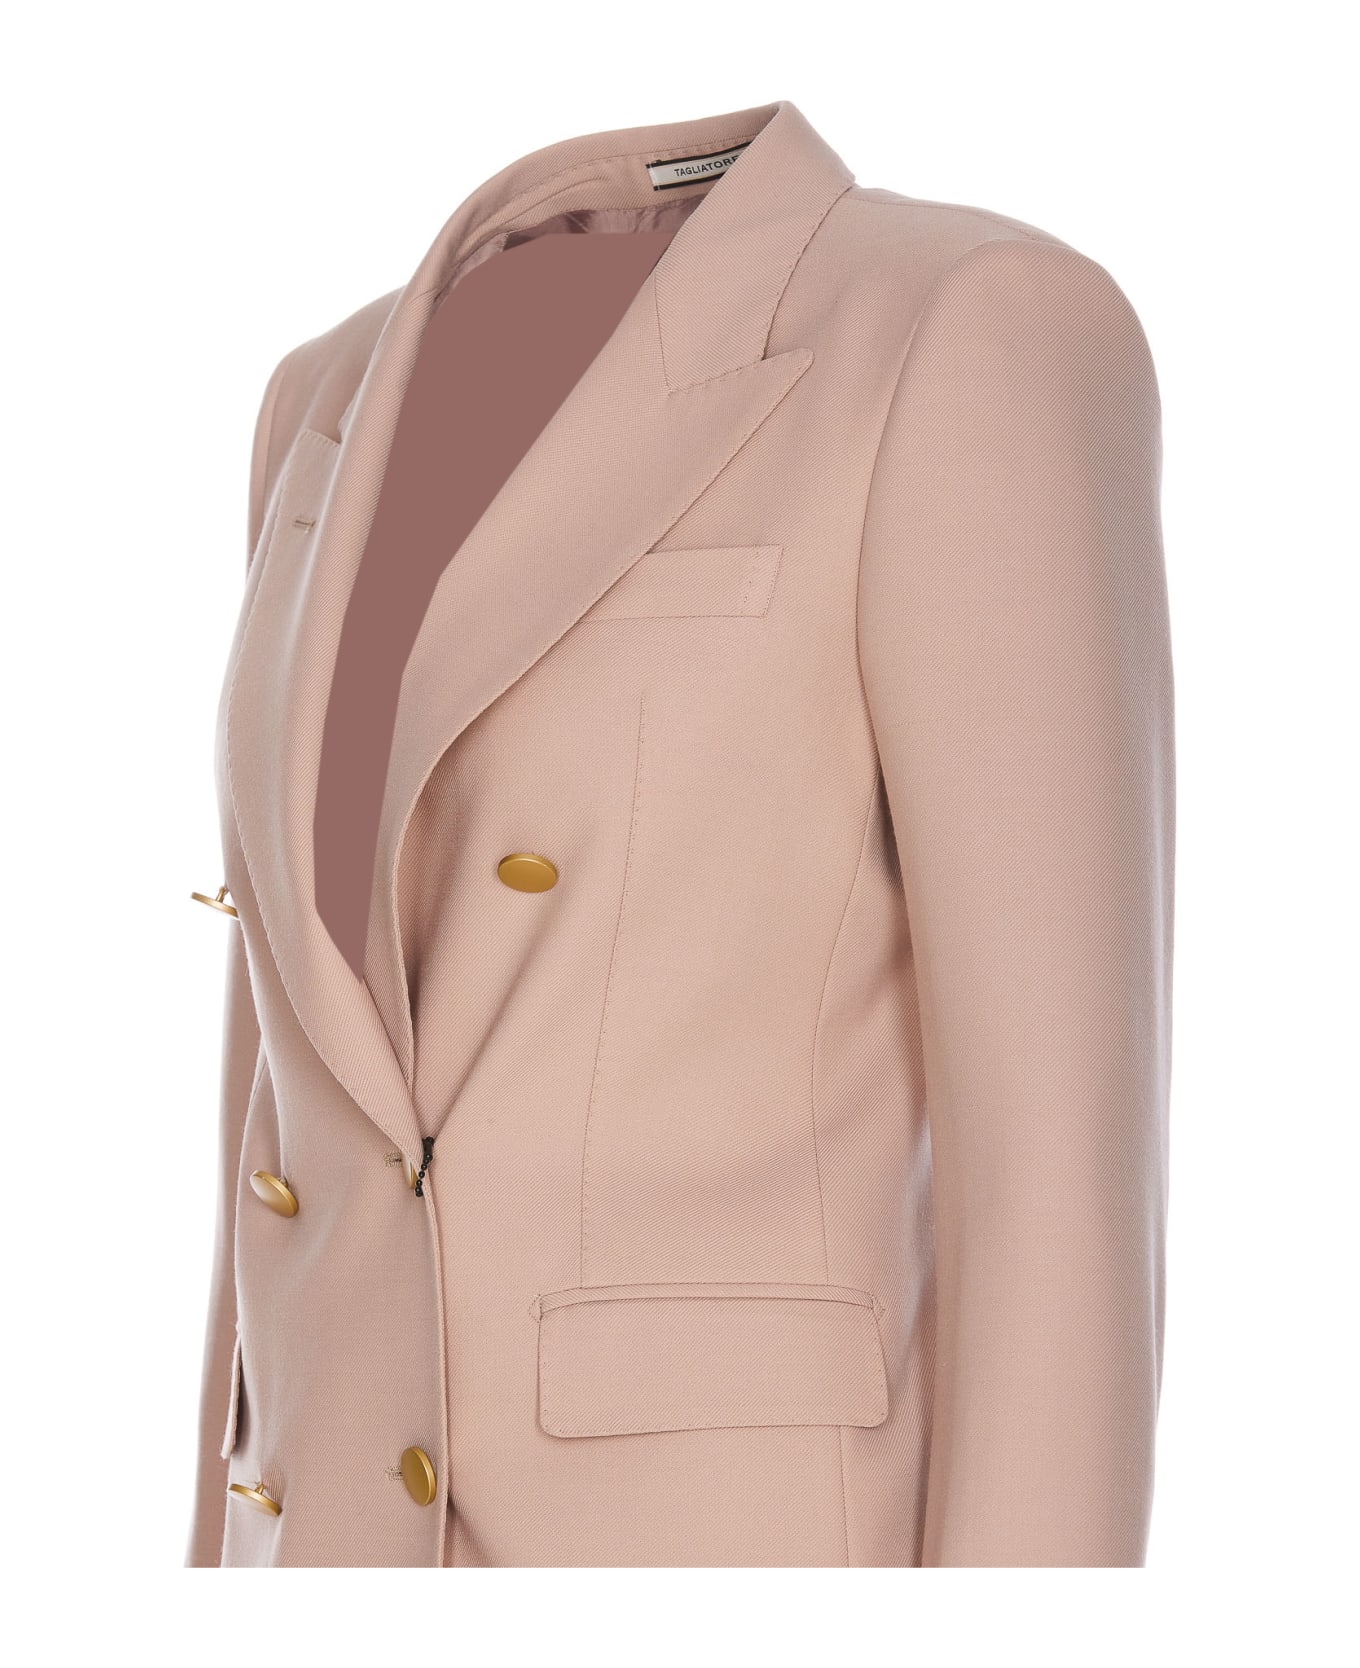 Tagliatore T-parigi Suit - Pink ブレザー